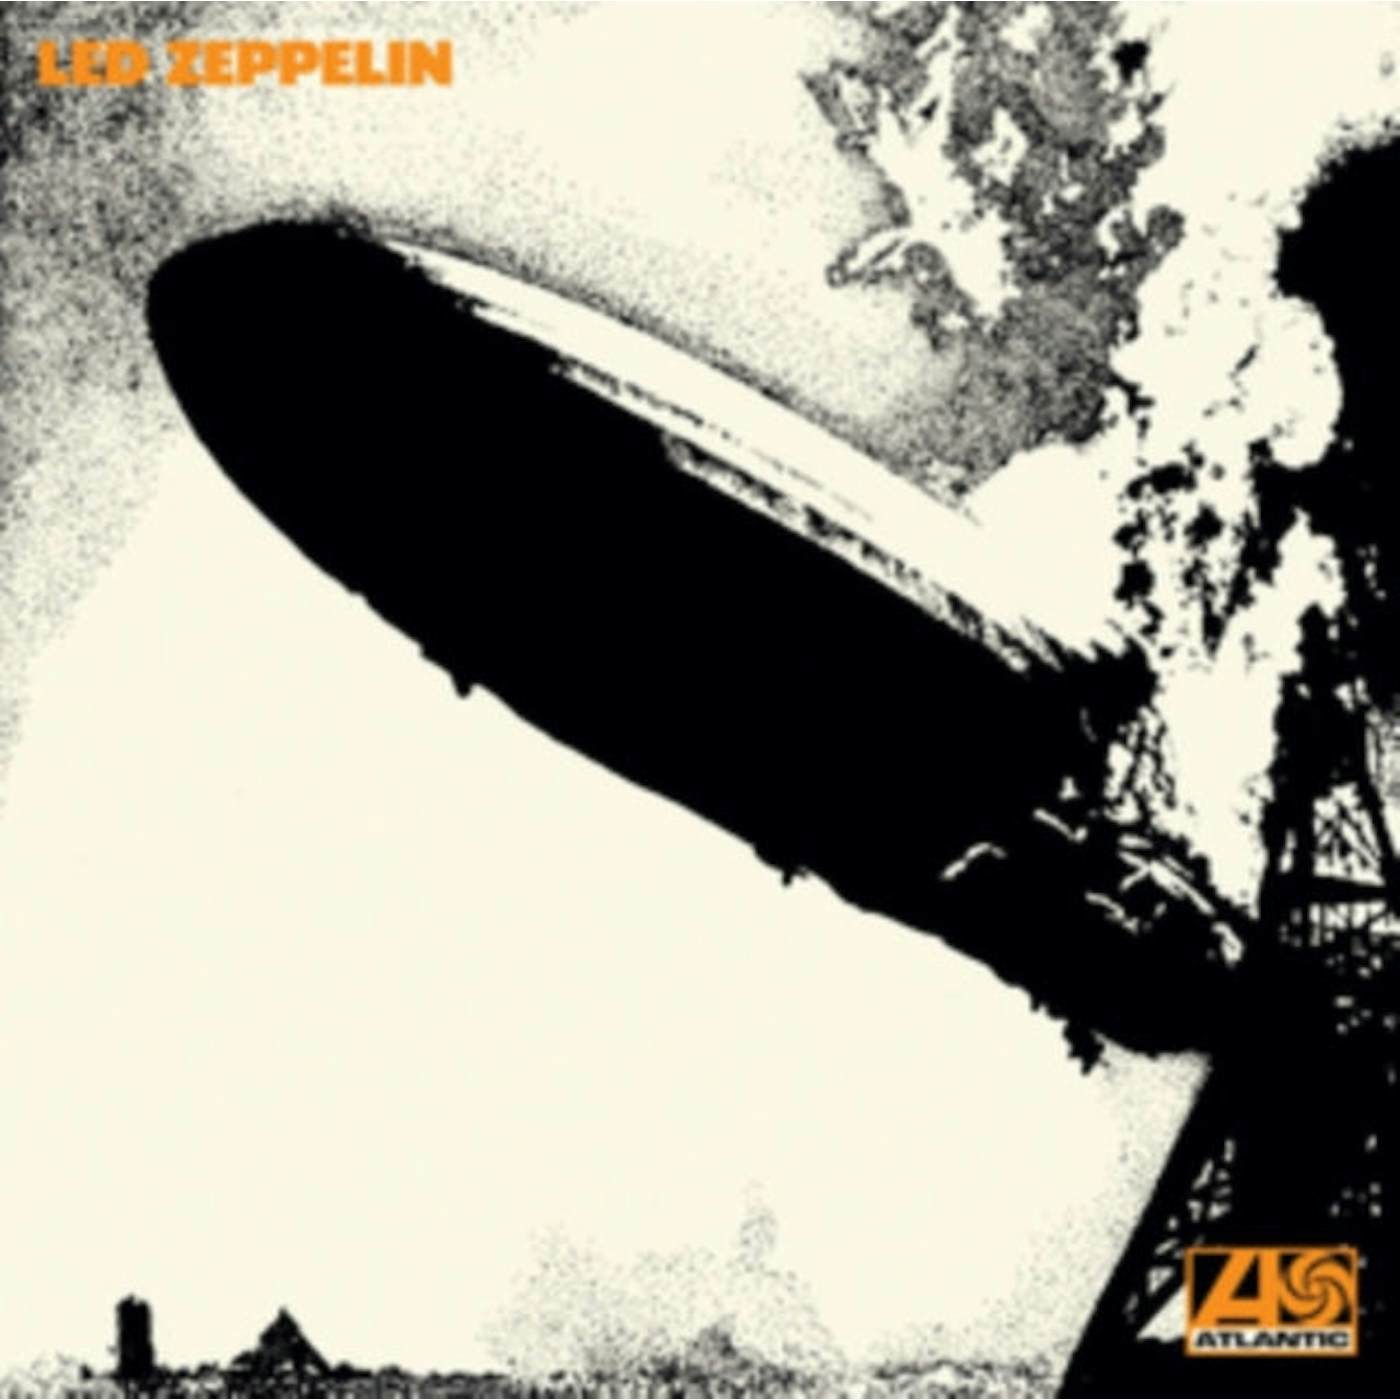 Led Zeppelin LP Vinyl Record - Led Zeppelin